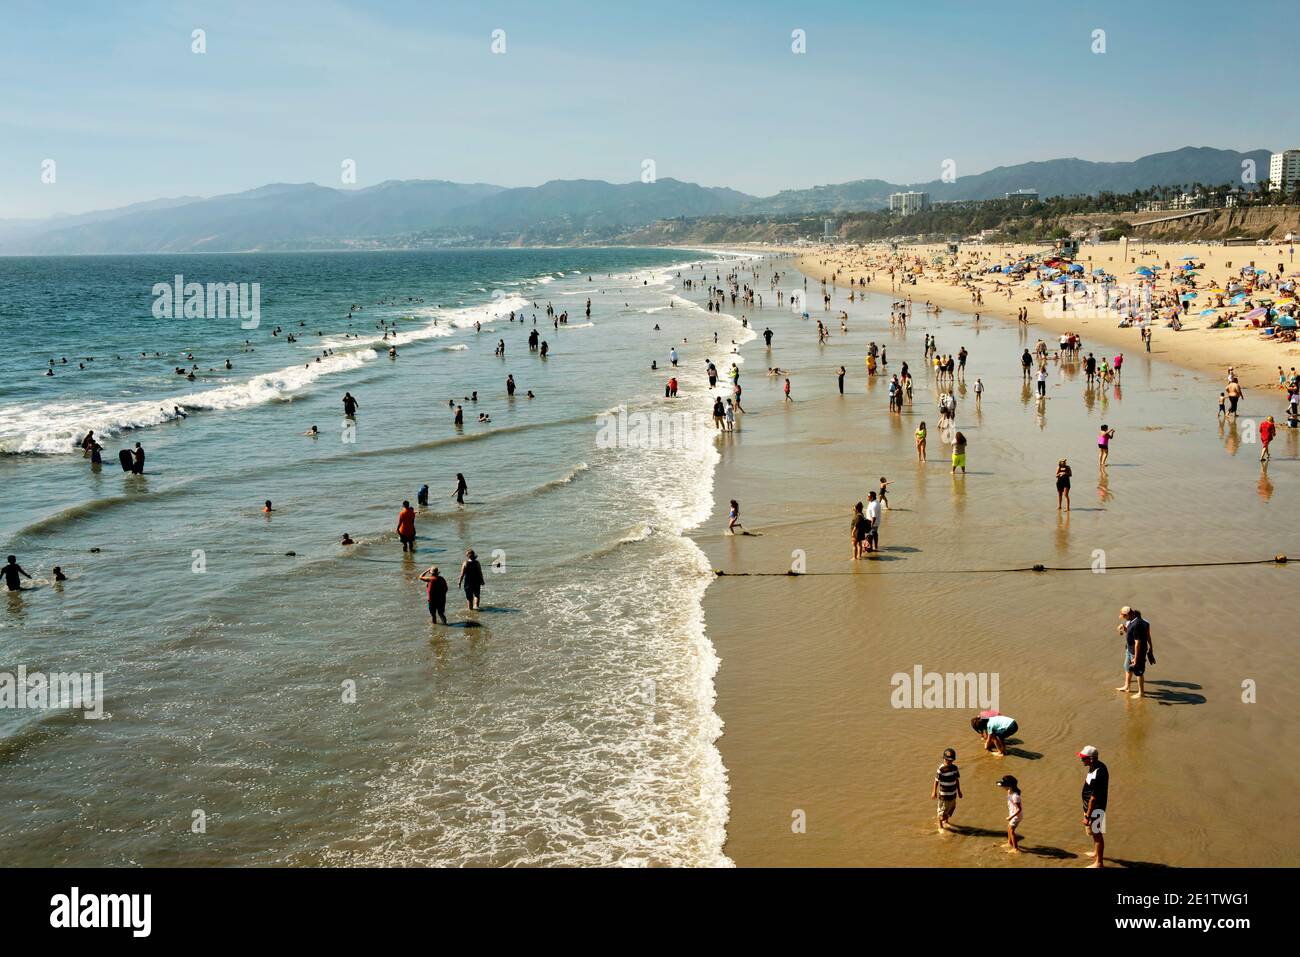 Un vendredi après-midi chargé sur la plage de Santa Monica. Los Angeles, Californie, États-Unis. 30 août 2019 Banque D'Images